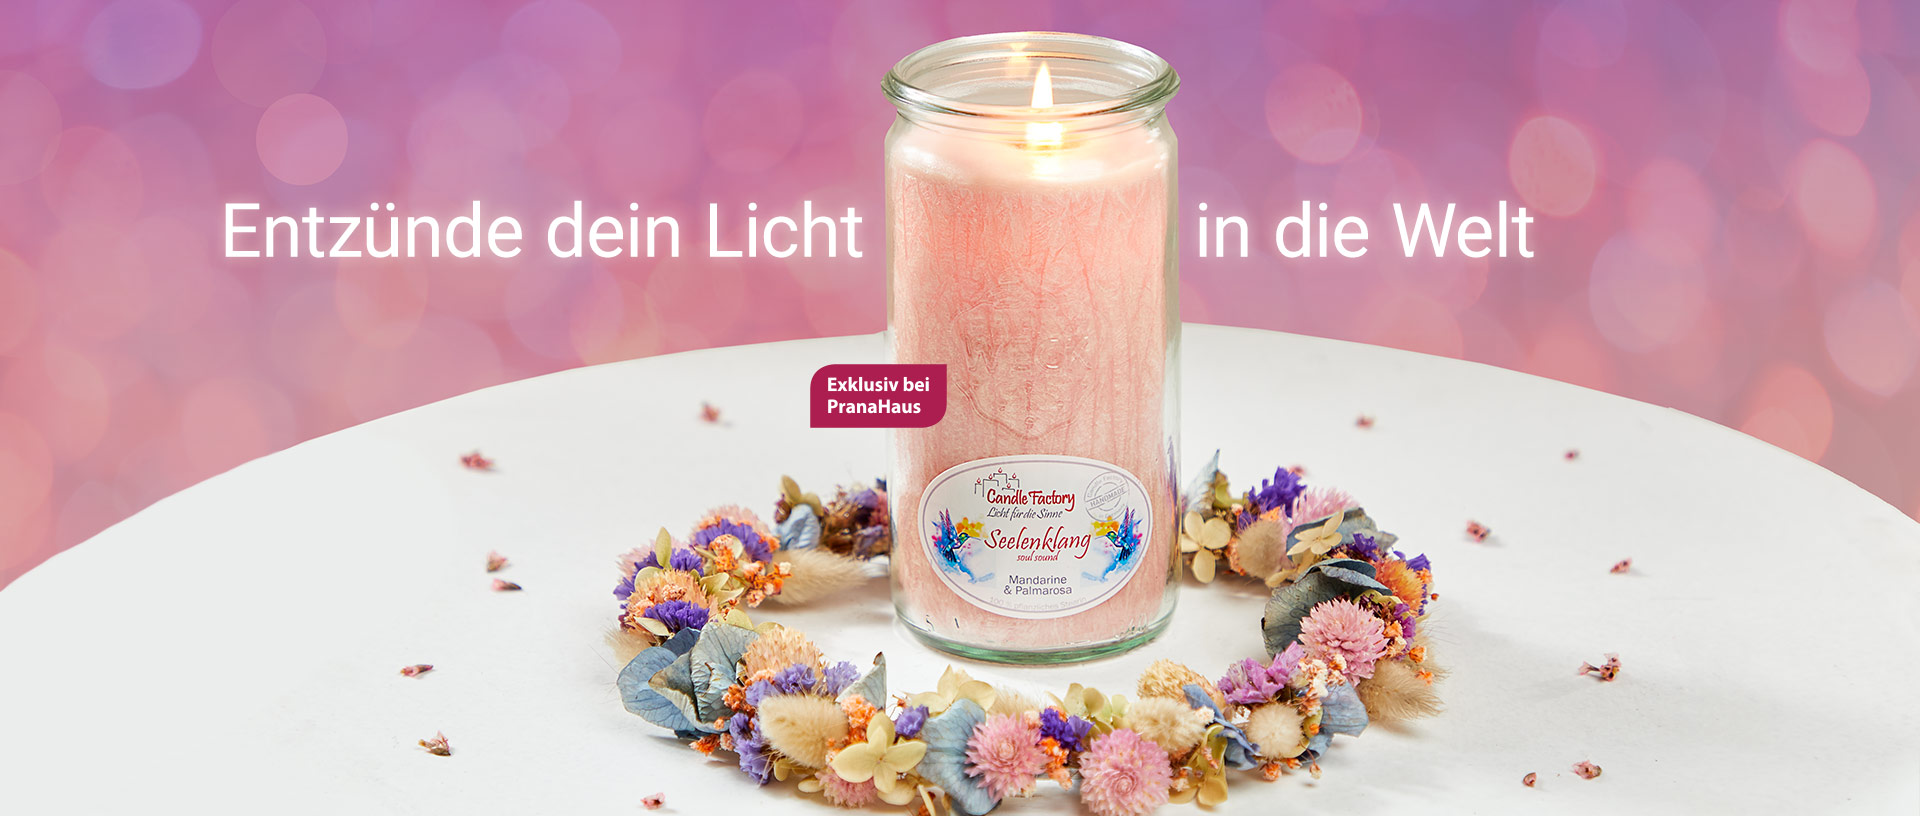 Eine brennende Duftkerze in einem rosa Weckglas steht auf einem Tisch, umgeben von einem bunten Blumenkranz. Daneben stehen die Worte "Entzünde dein Licht in die Welt".